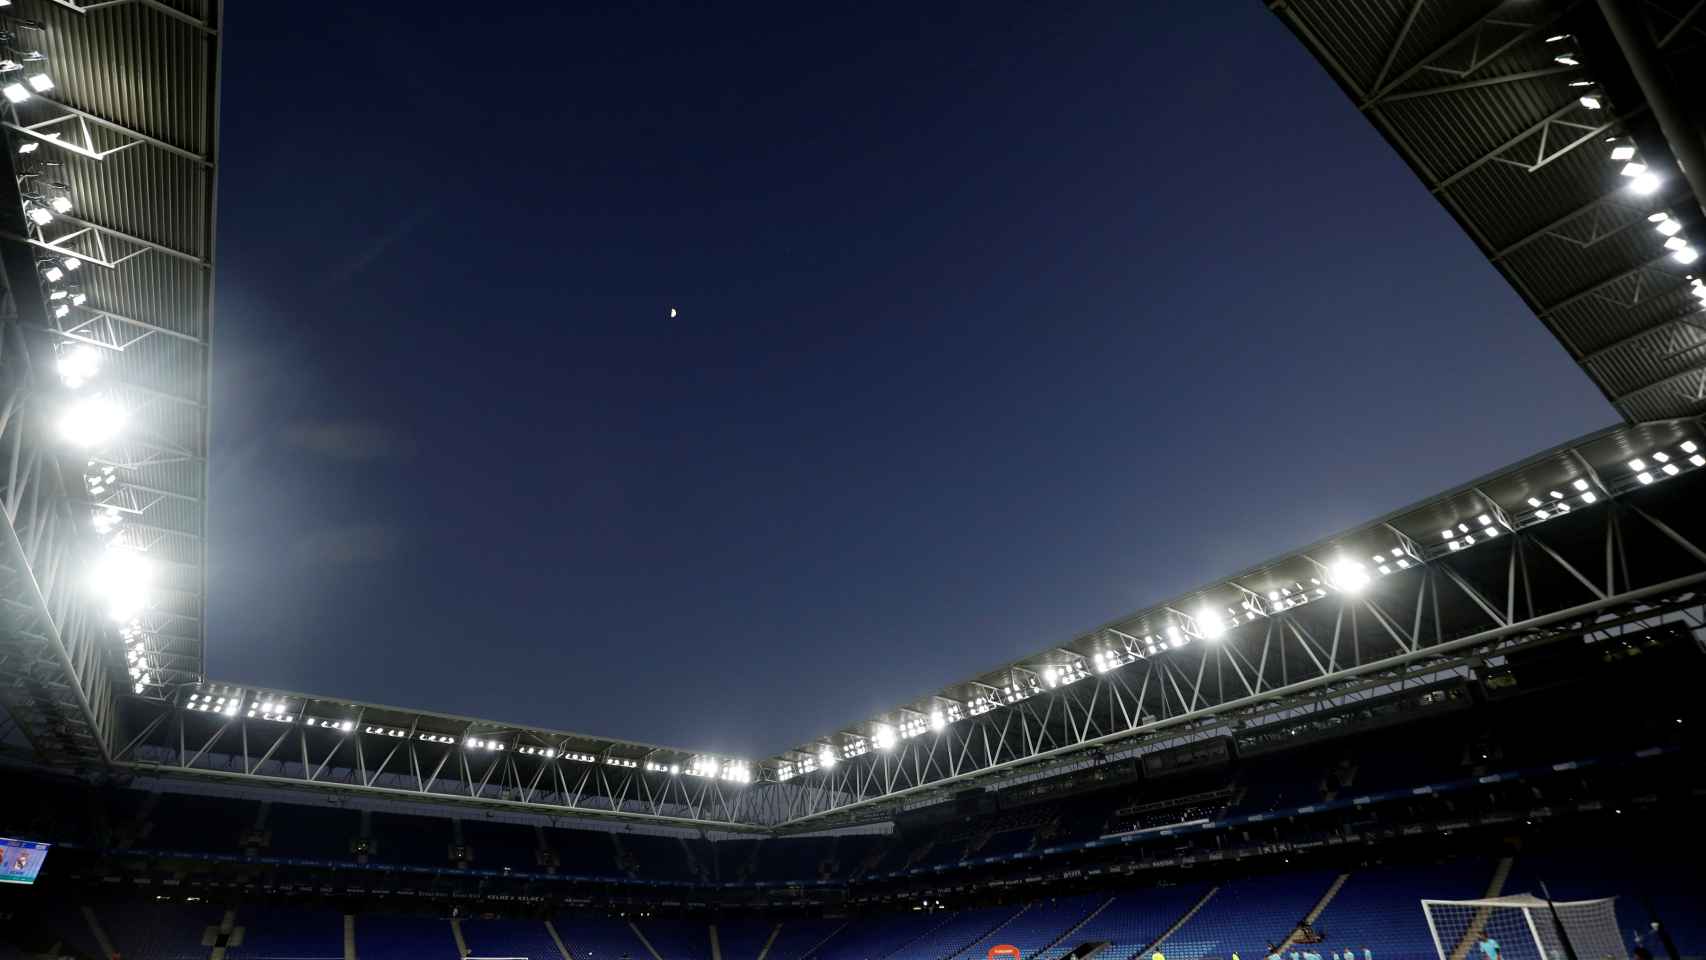 RCDE Stadium, vacío antes del partido Espanyol - Real Madrid